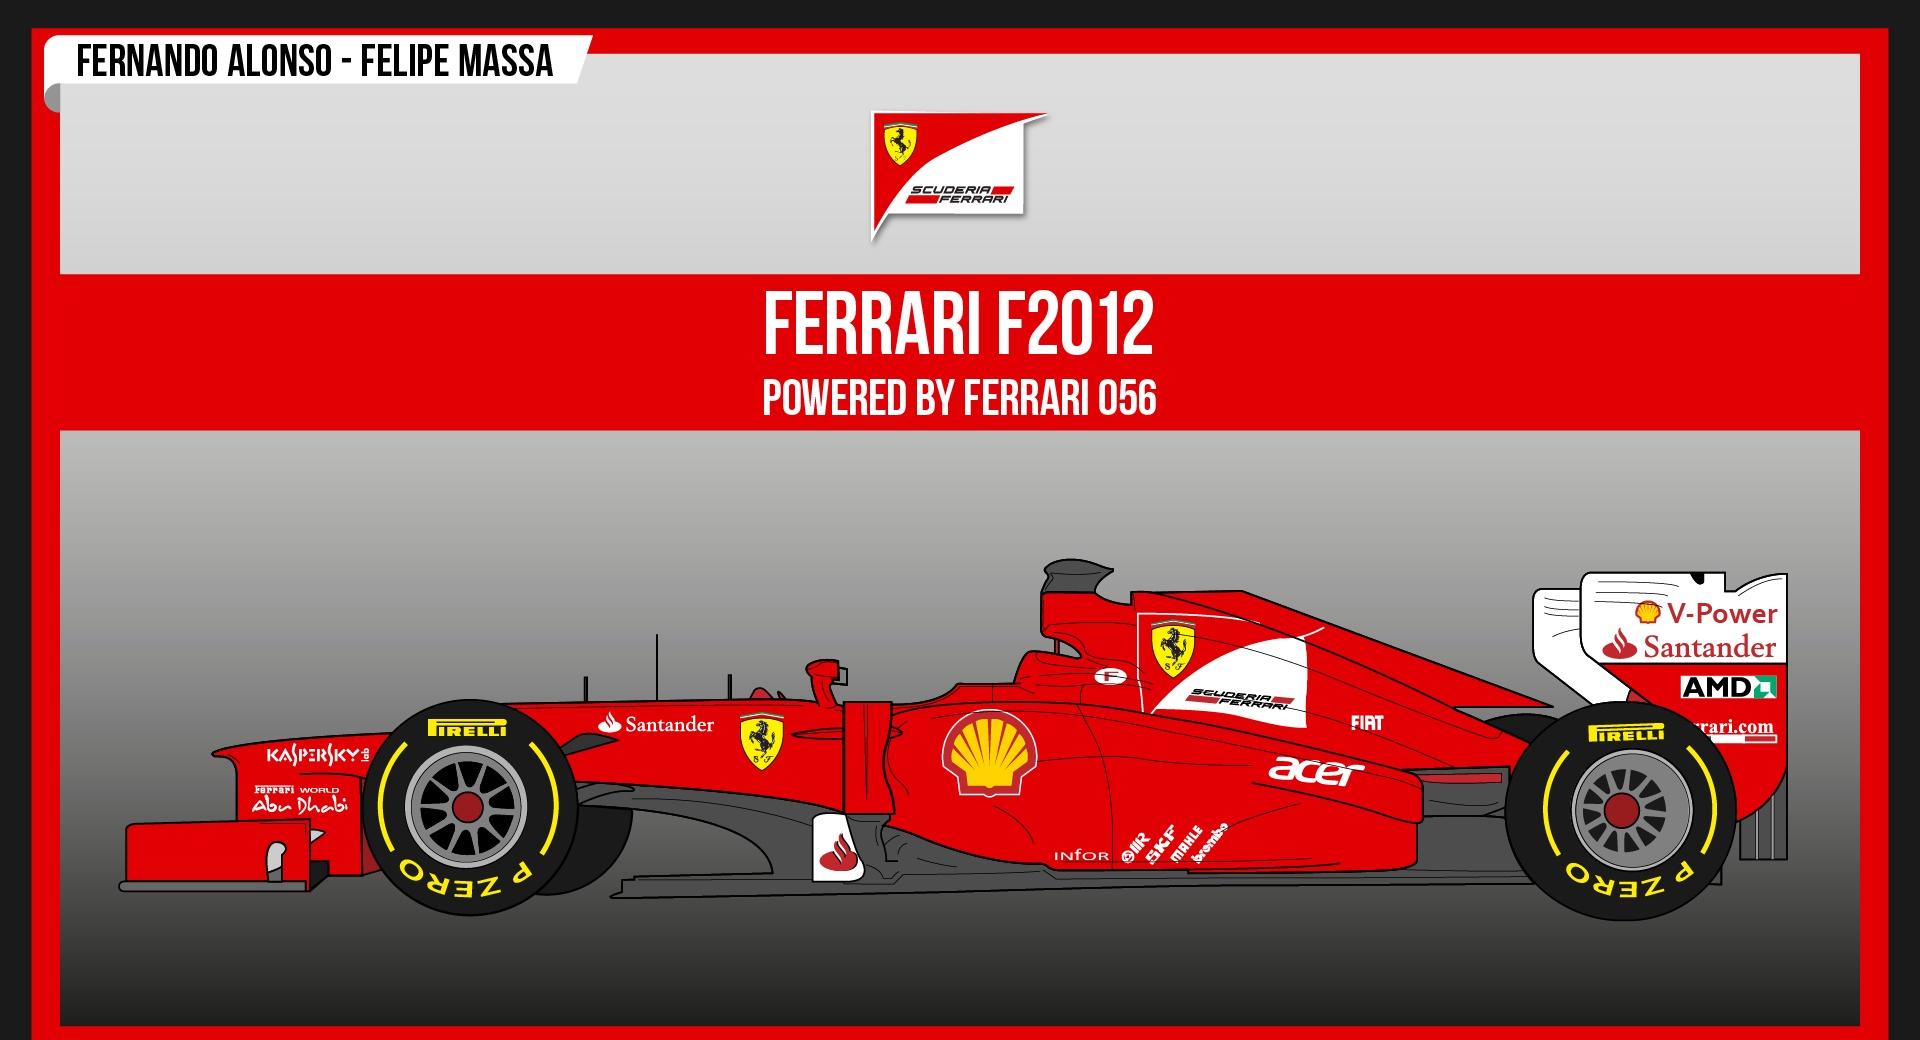 Ferrari F2012 at 2048 x 2048 iPad size wallpapers HD quality